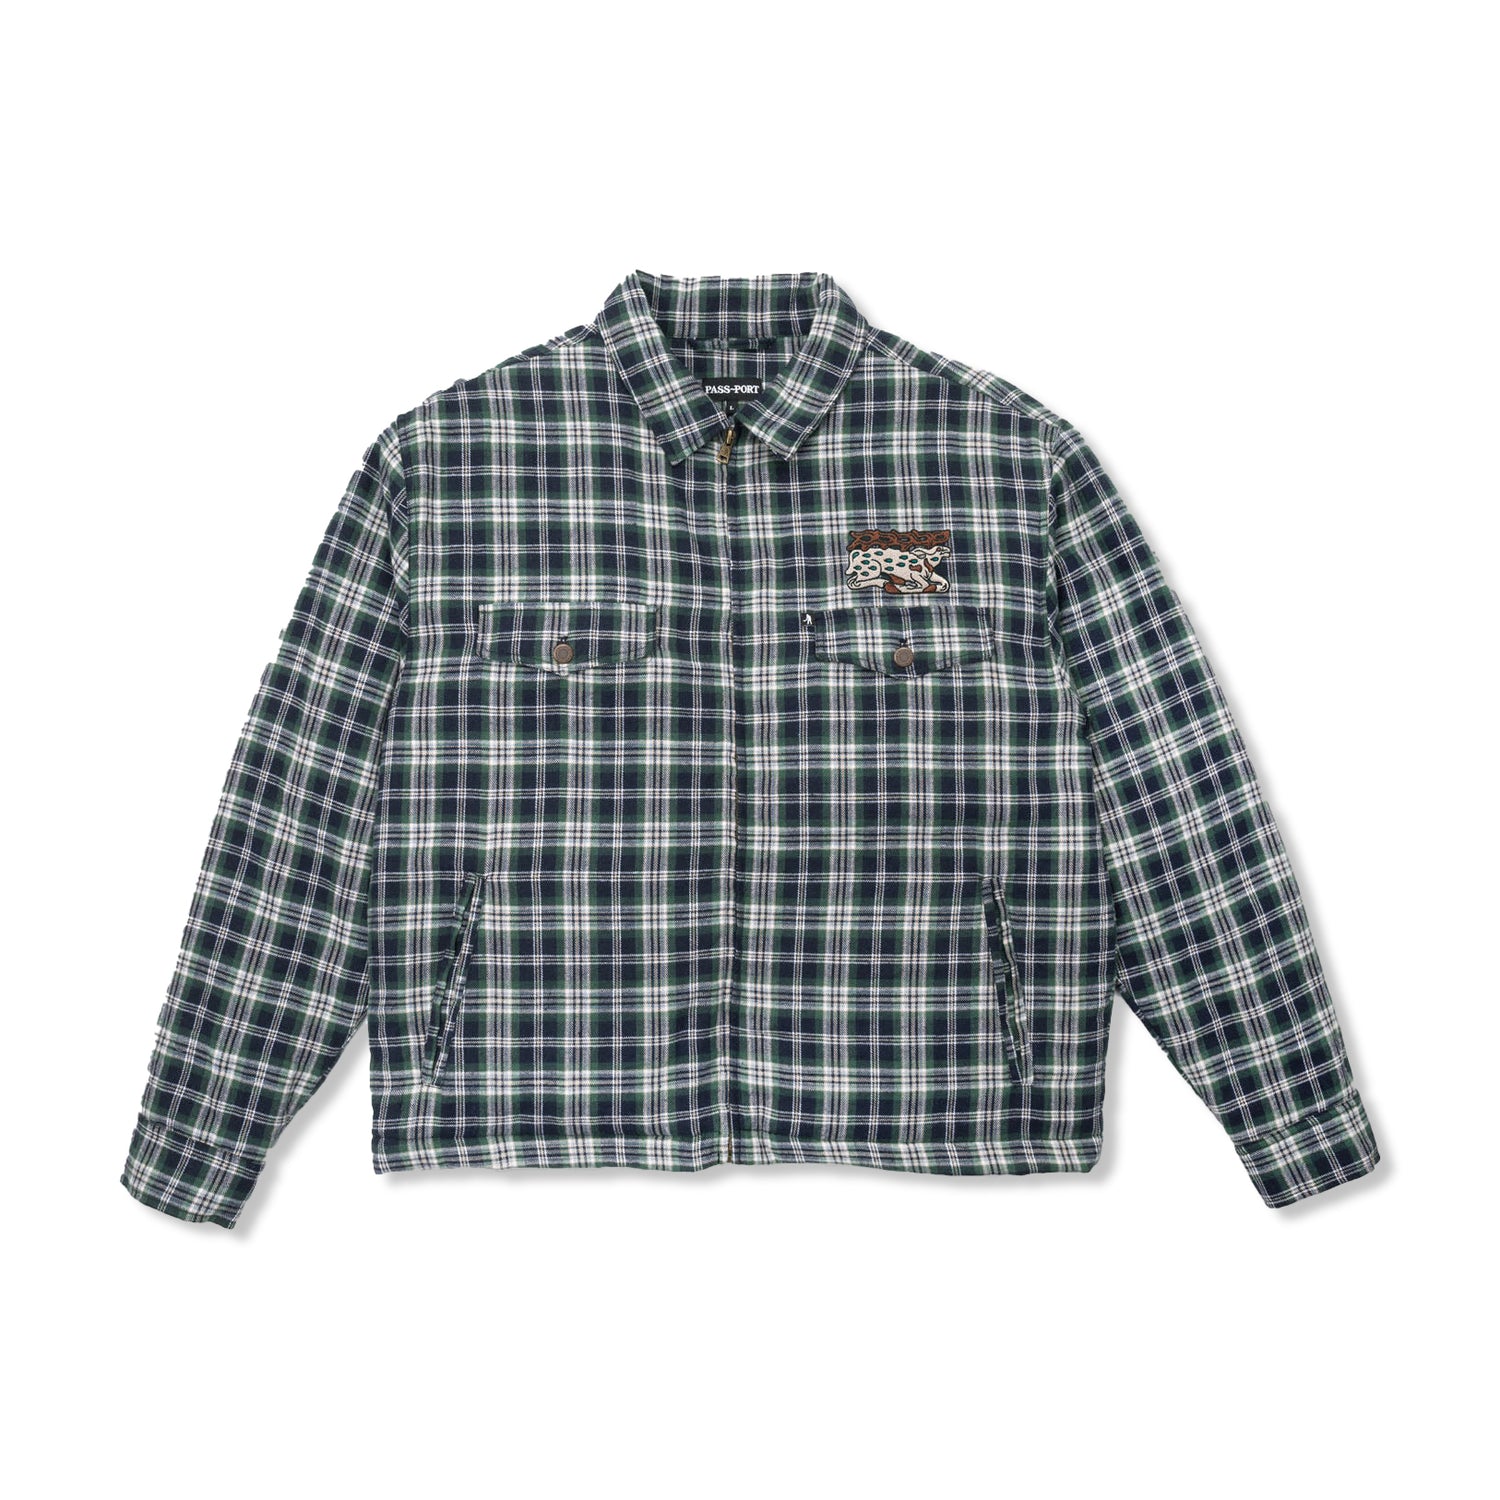 Antler Zip Flannel Shirt, Navy / Green